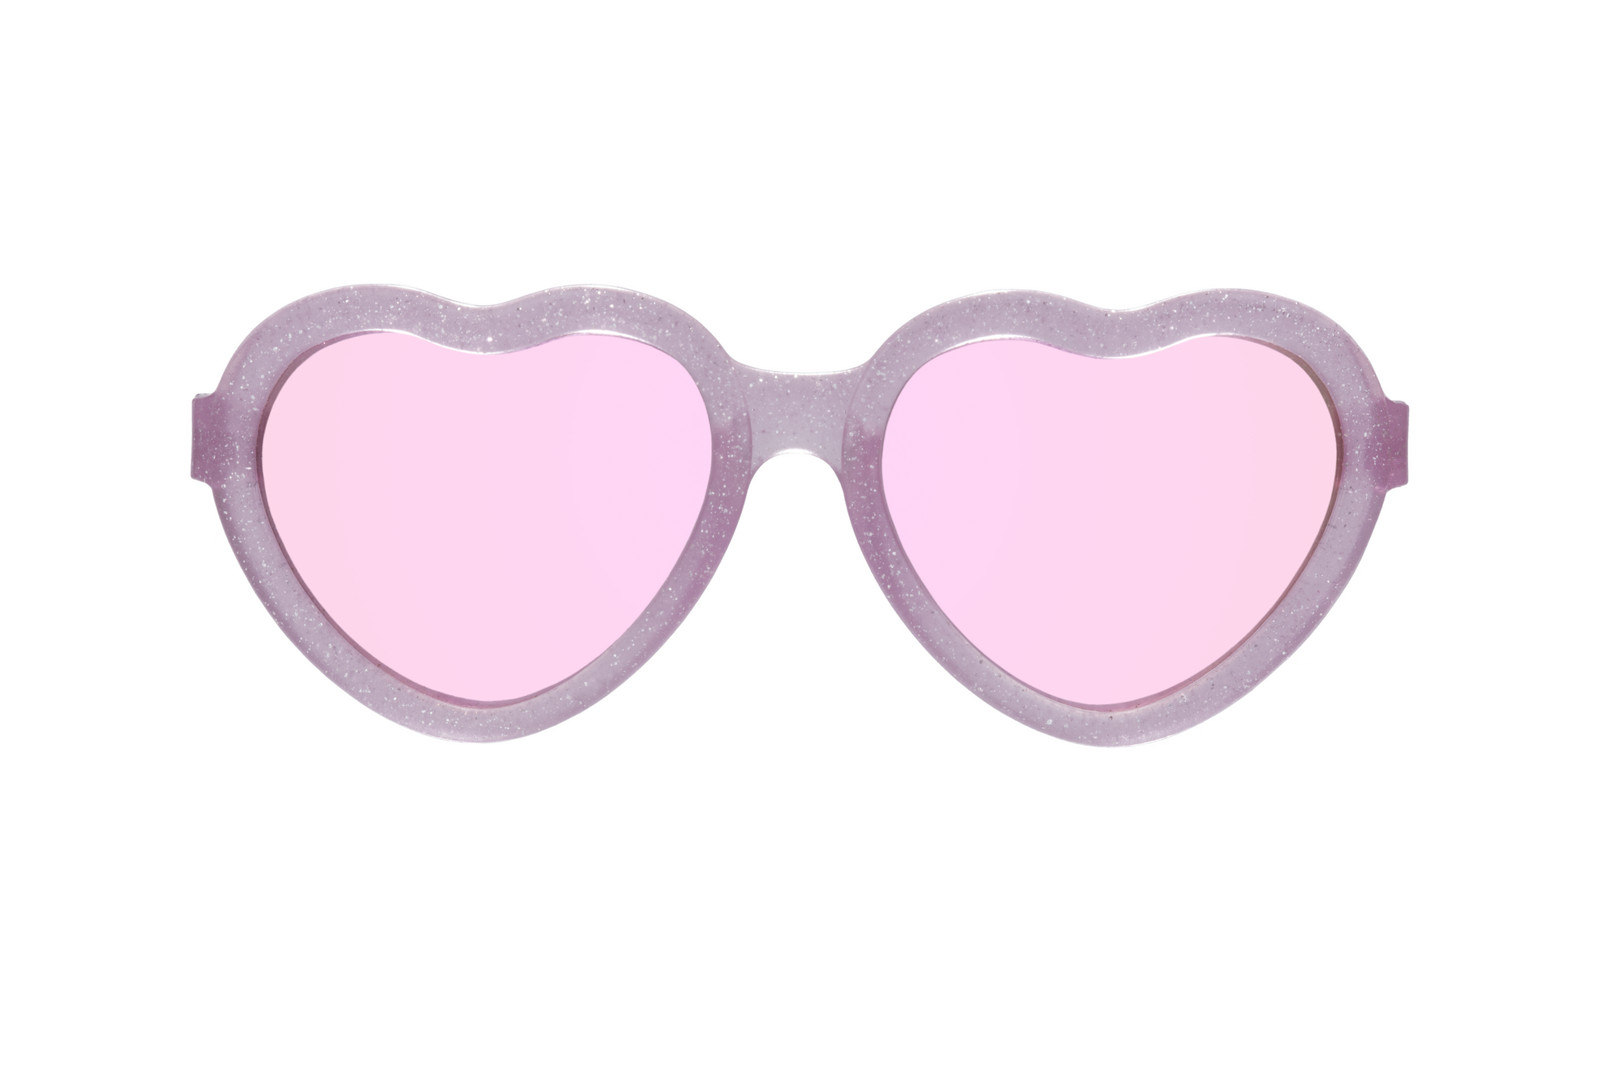 BABIATORS Original Hearts, sluneční zrcadlové brýle, růžové třpytky, 3-5 let